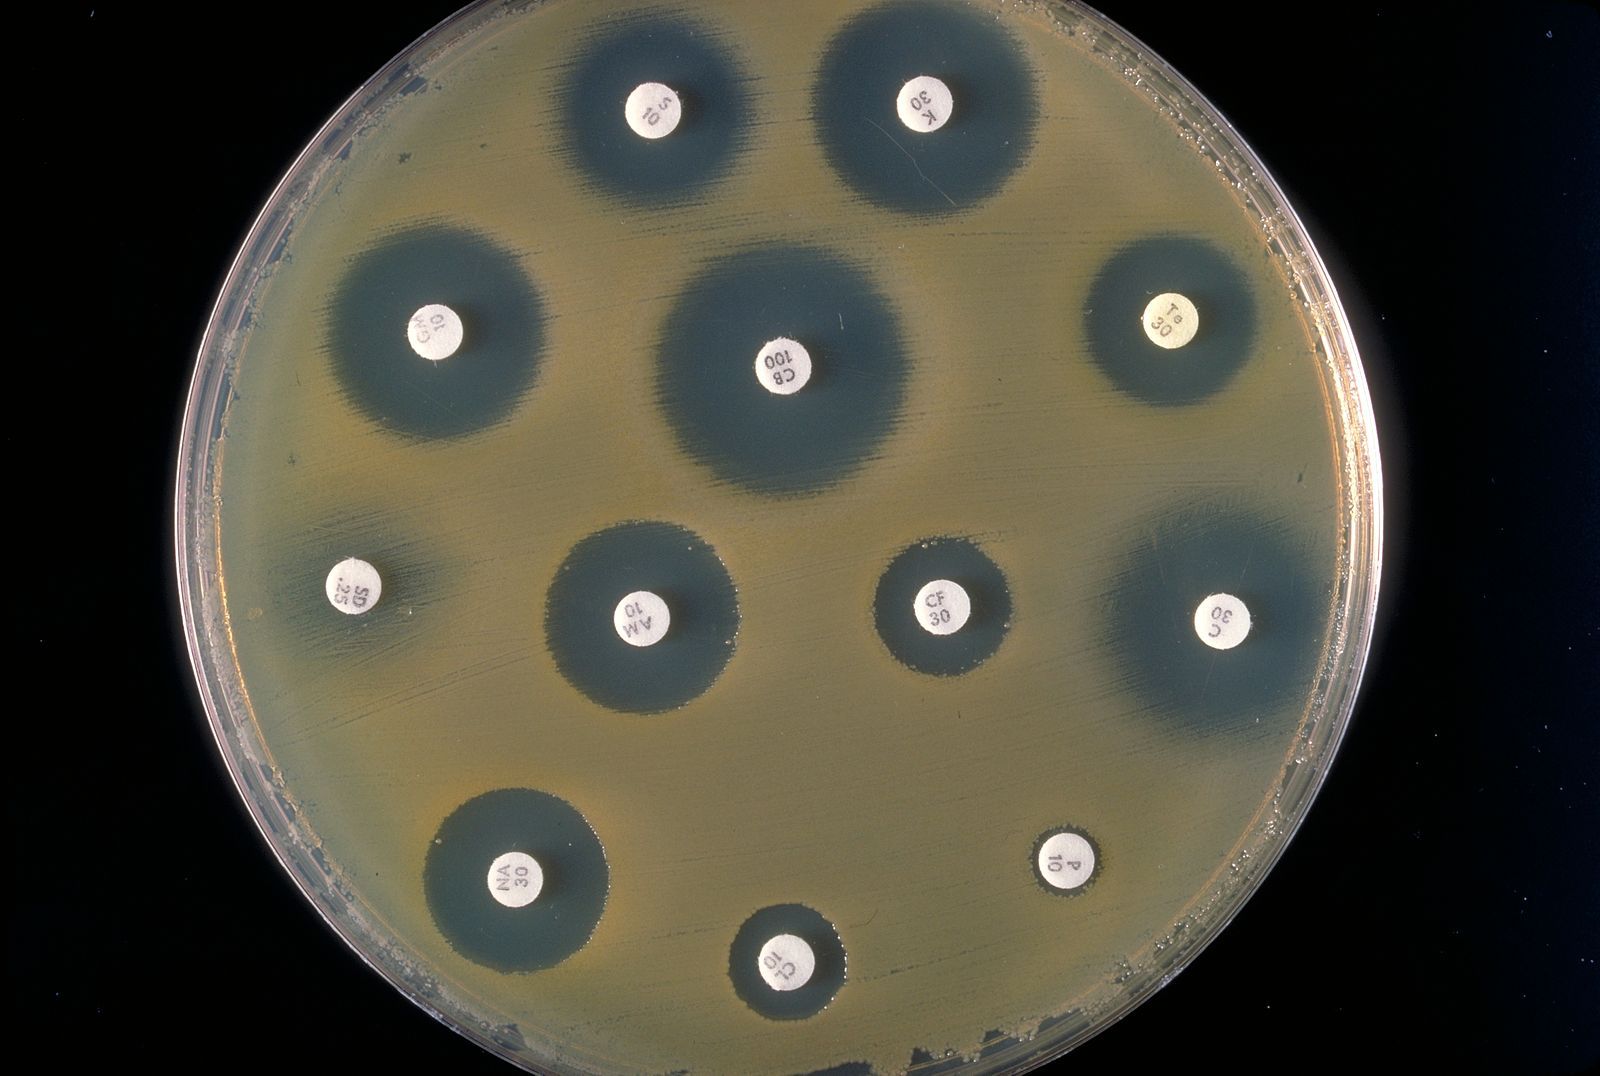 Bu bakteri kültüründe beyaz görünen diskler antibiyotik disklerdir. Bakteriler duyarlı oldukları antibiyotiklerin etrafında büyüyemiyorlar.